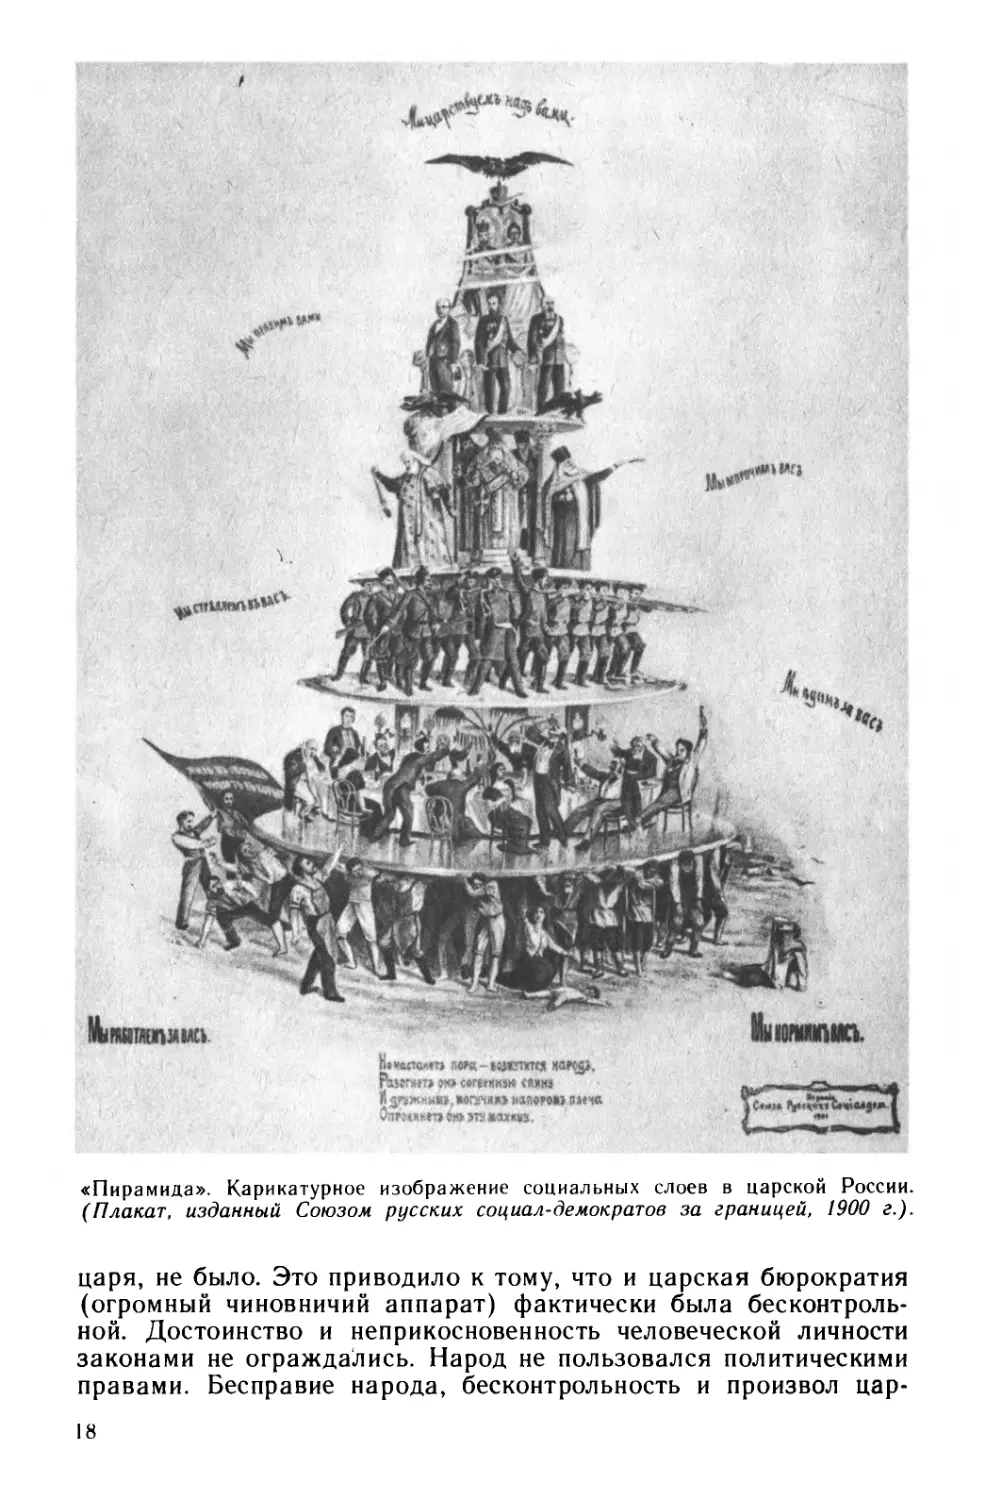 § 4. Политический строй России к началу XX в. Буржуазия и царизм